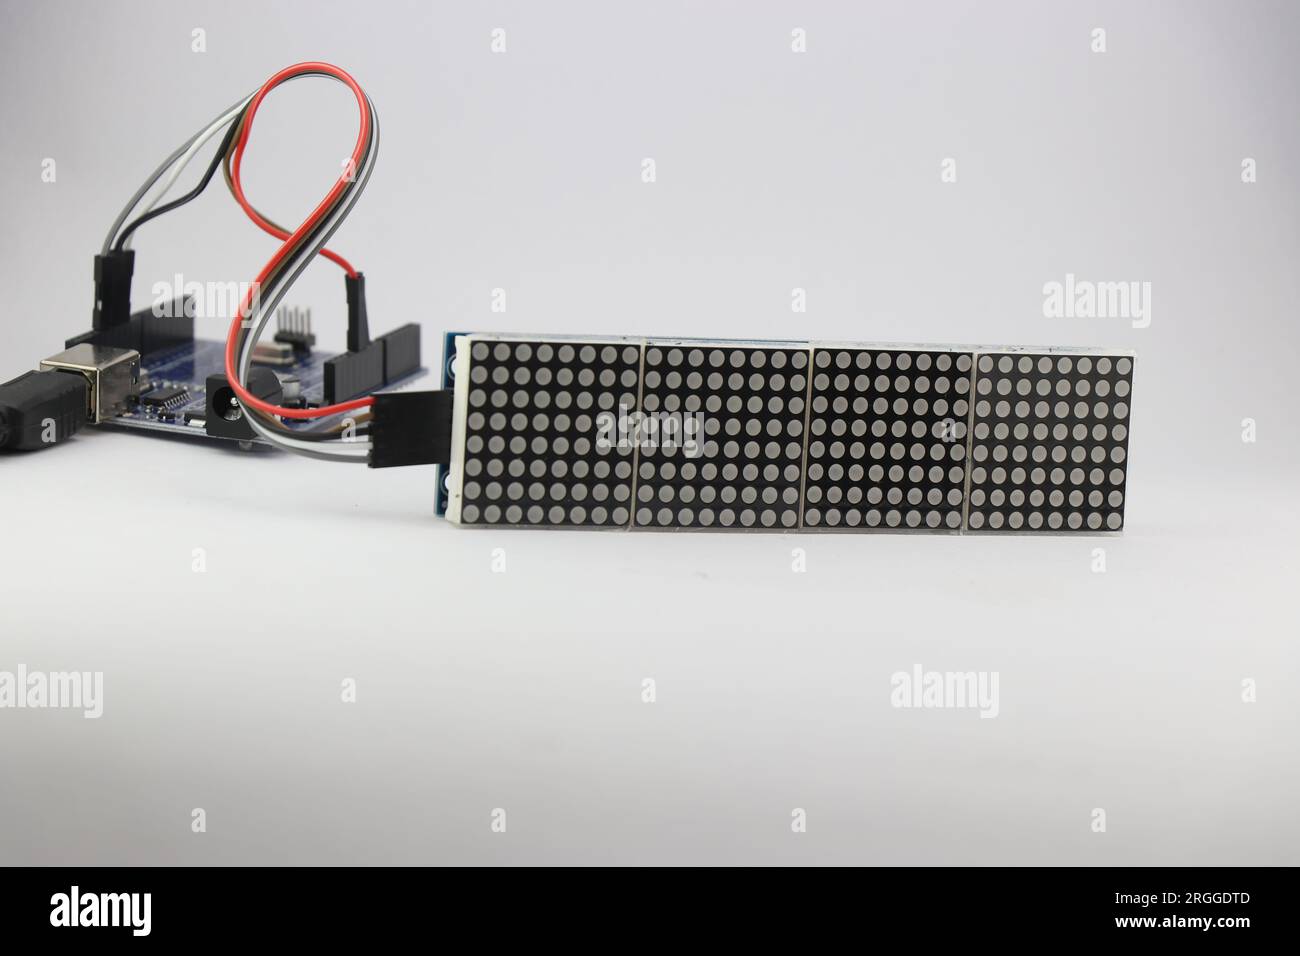 Die LED-Punktmatrixanzeige ist mit einem Mikrocontroller über Überbrückungskabel verbunden, die ein Programm zur Anzeige von Informationen enthalten Stockfoto